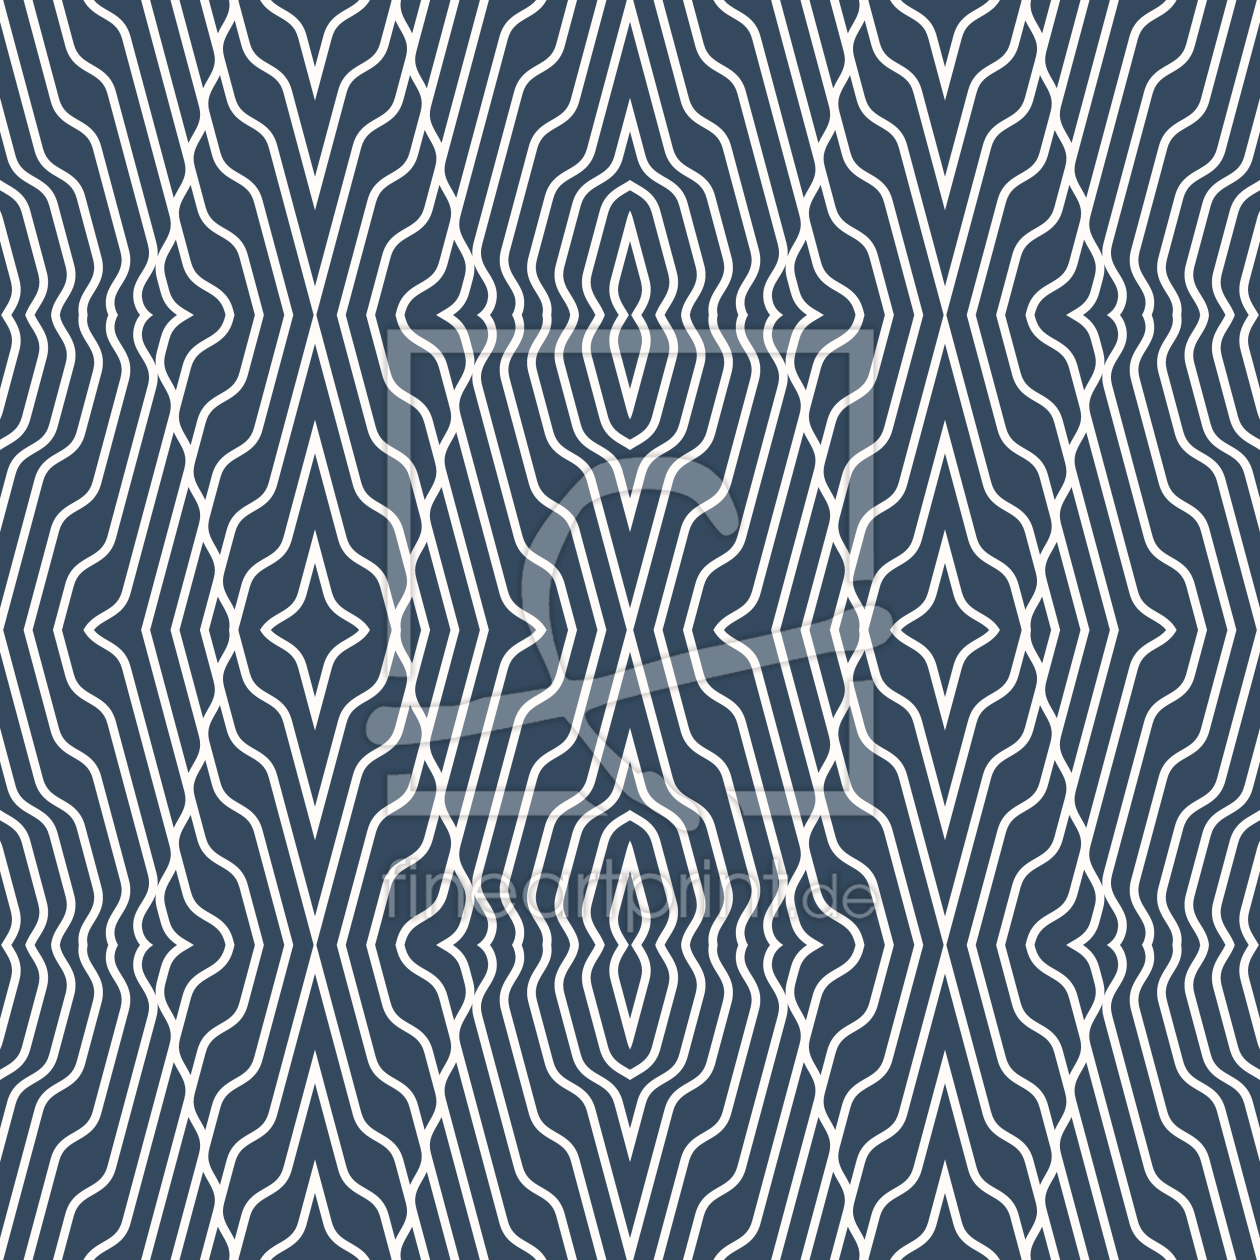 Bild-Nr.: 9013513 Sechseck-Illusion erstellt von patterndesigns-com